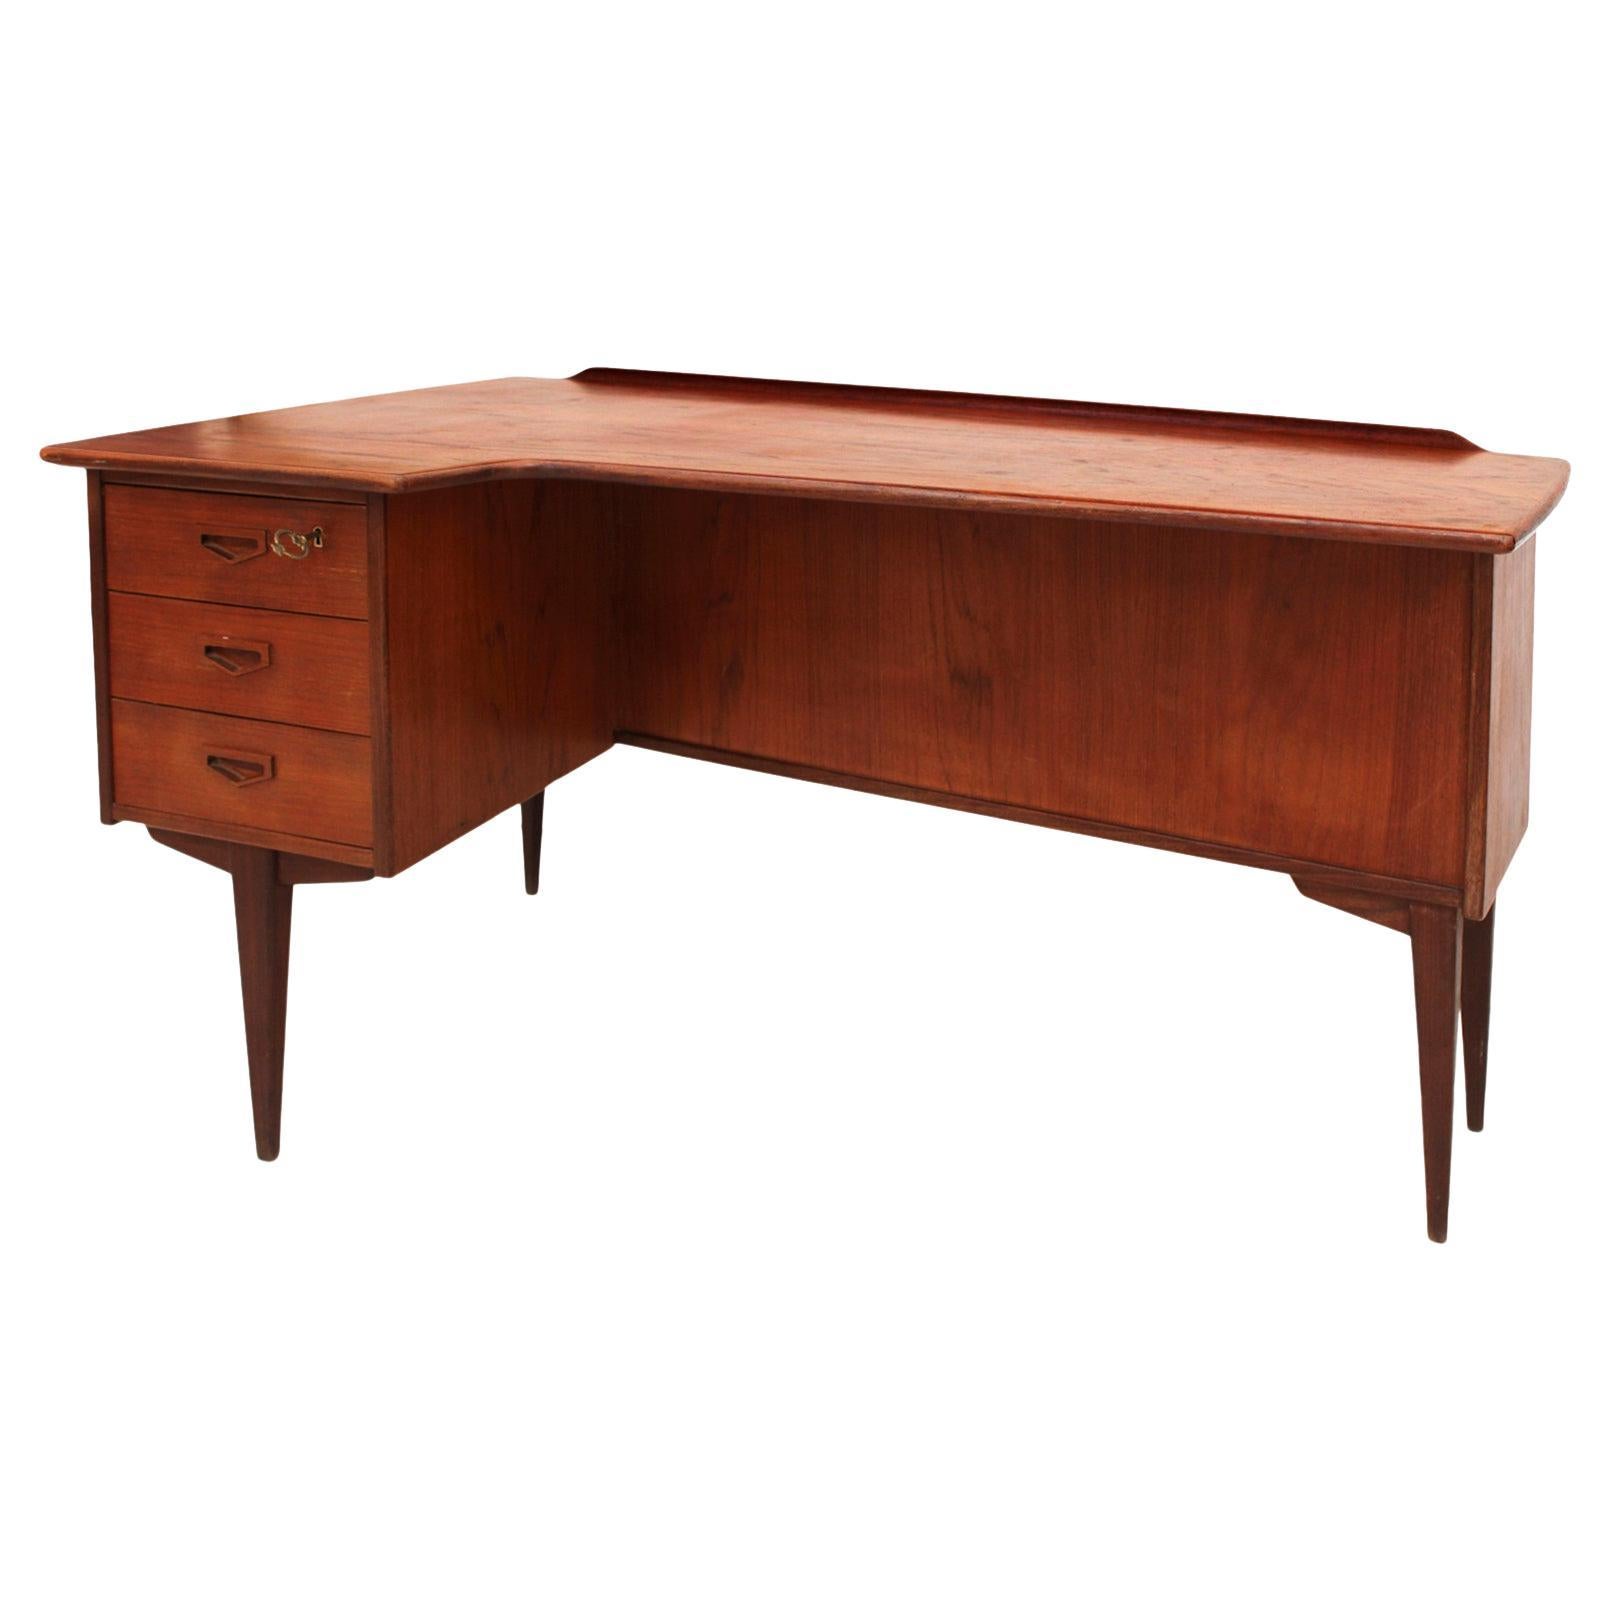 Midcentury Solid Wood Desk Designed by Arne Vodder Boomerang, 1960s